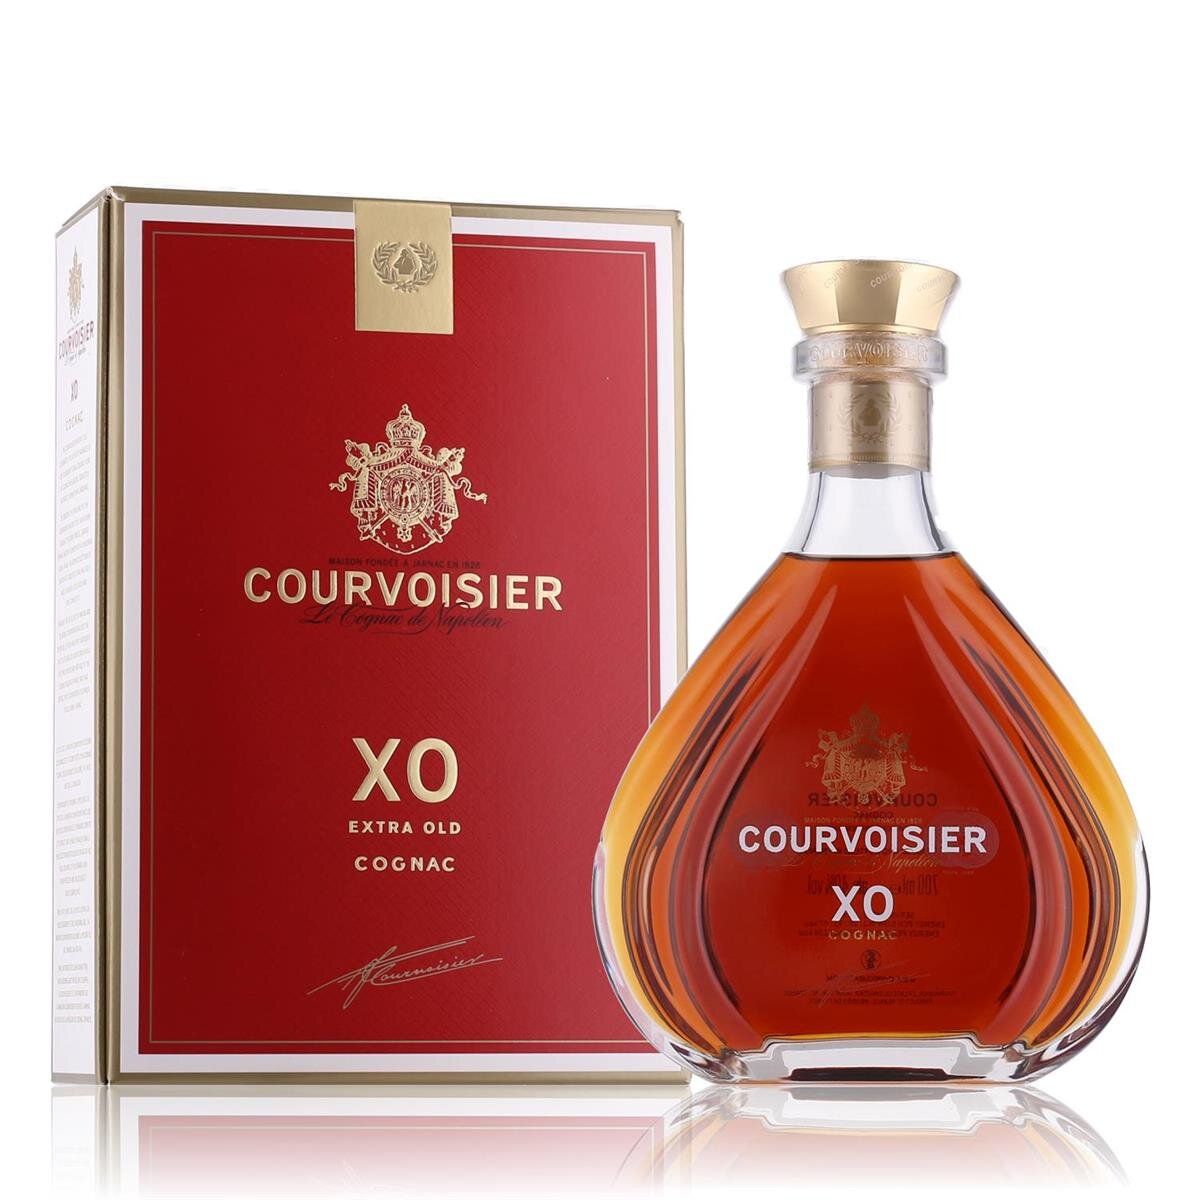 Courvoisier XO Cognac 40% Vol. 0,7l in Geschenkbox, 123,19 €